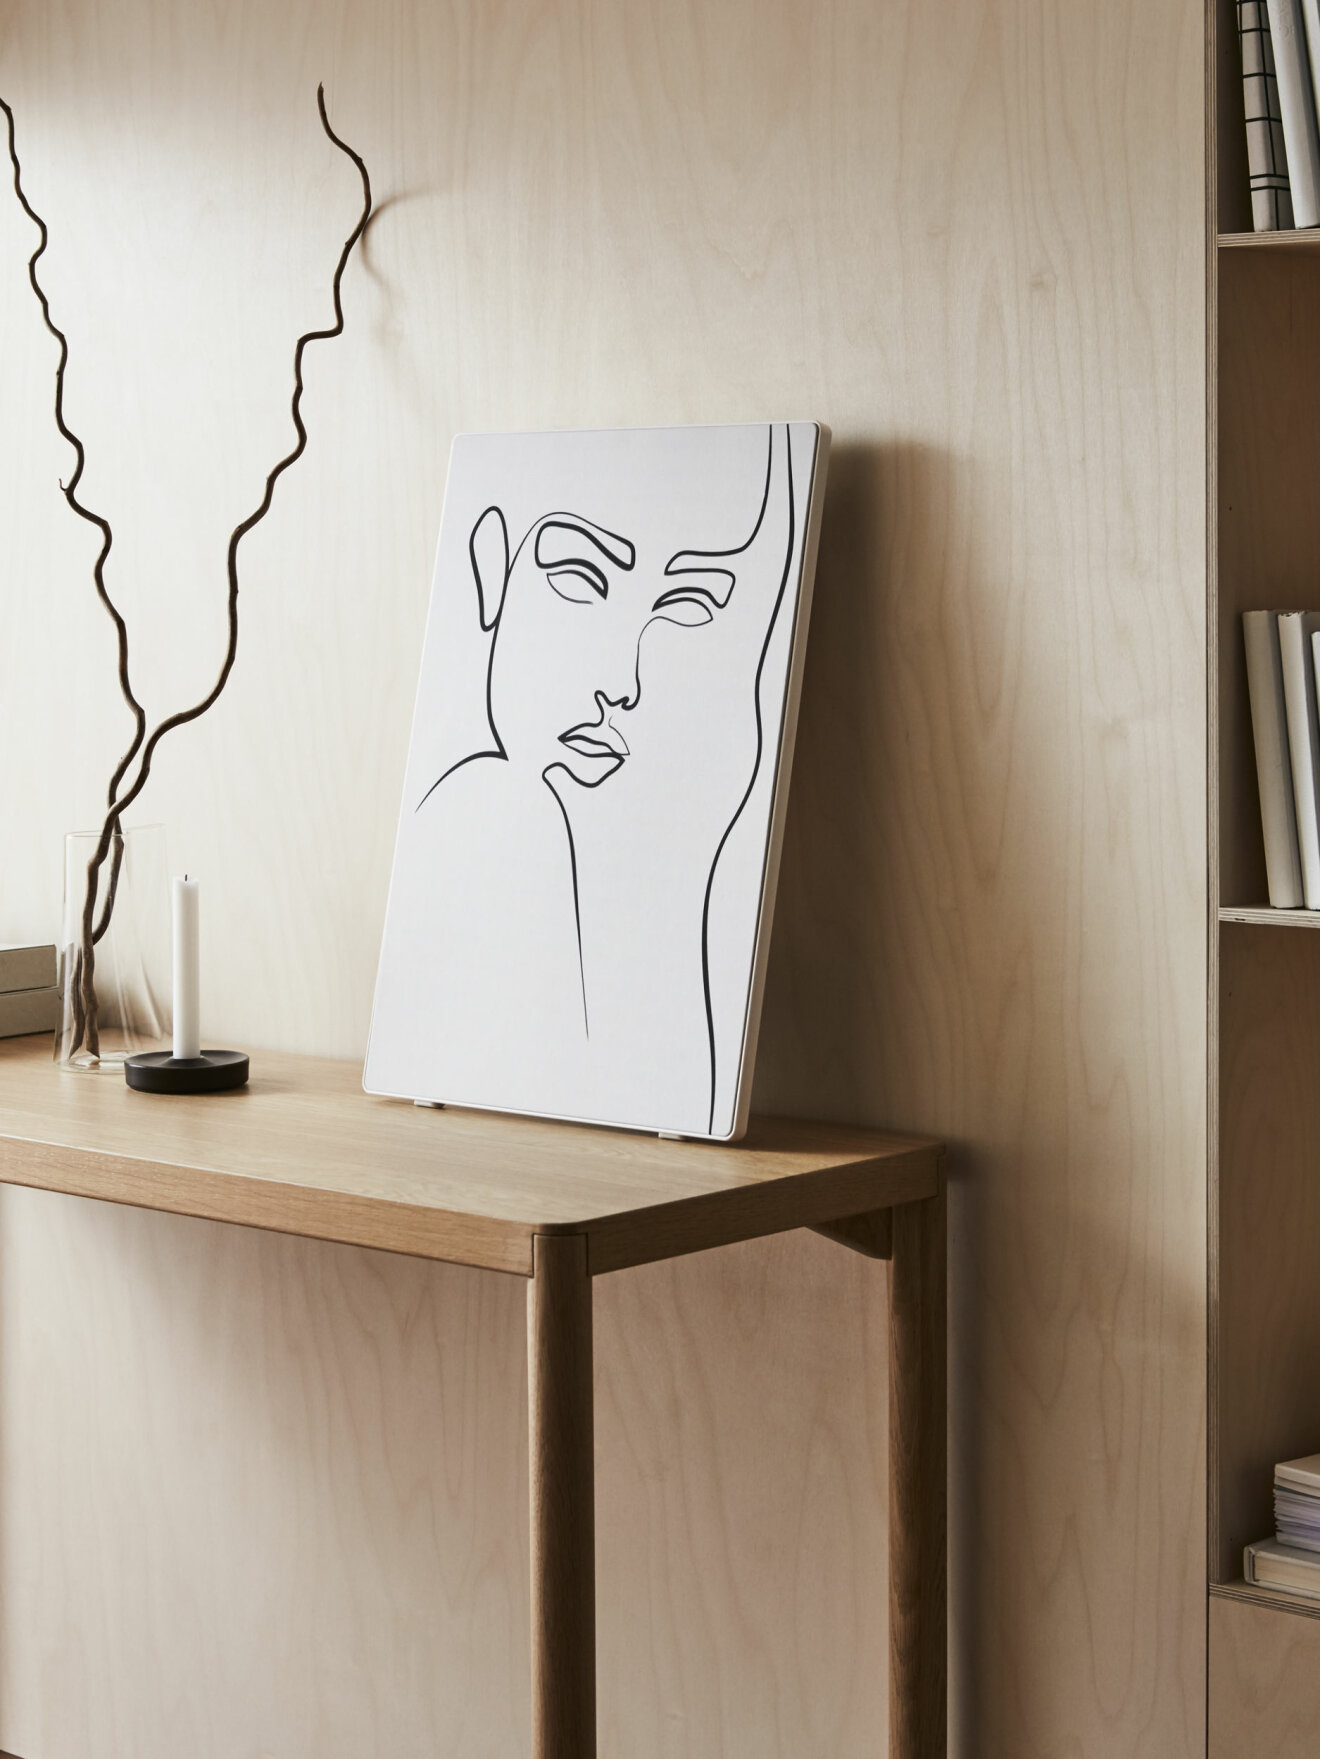 Ikea släpper tavelram med Sonos se bilderna här